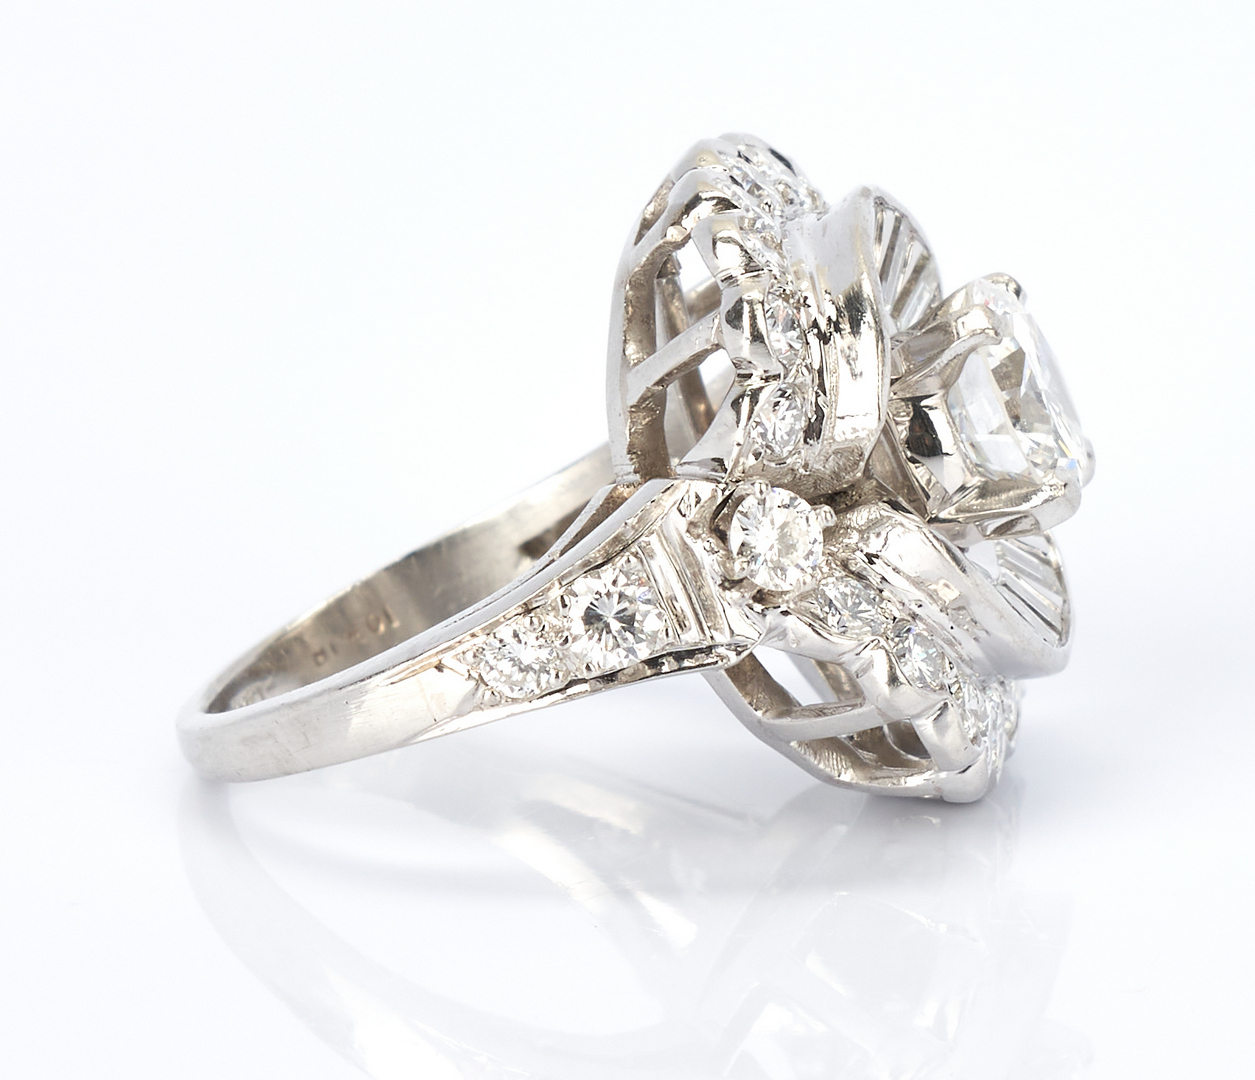 Lot 26: Ladies Platinum & Diamond Dinner Ring, 3.67 Carats | Case Antiques